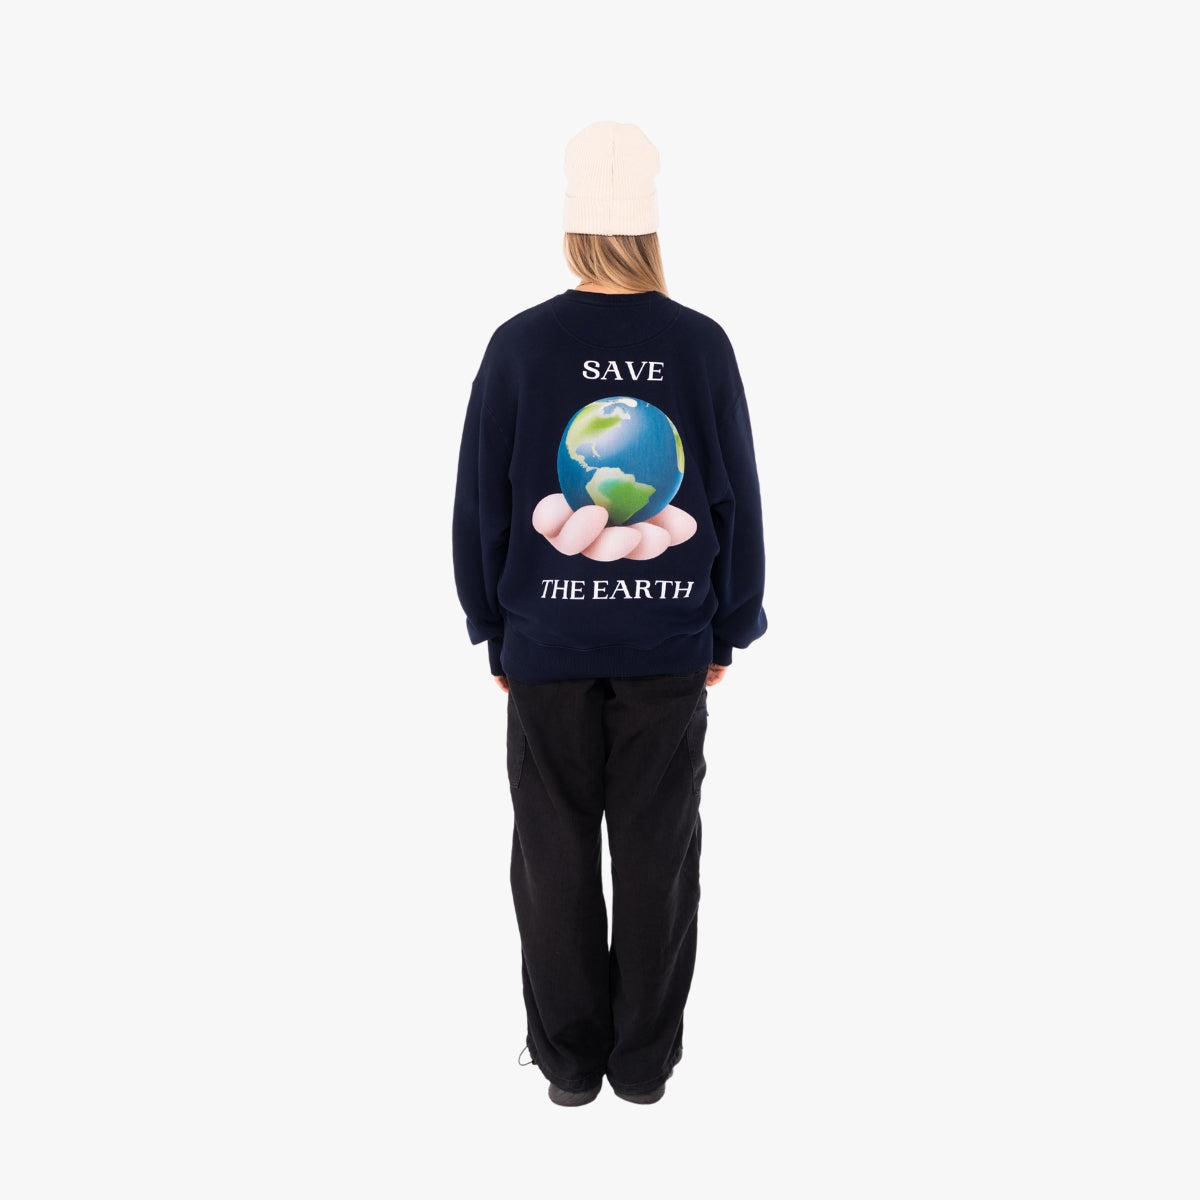 'SAVE THE EARTH' Organic Oversize Sweatshirt in der Farbe French Navy als Komplettaufnahme vom Outfit getragen von einem weiblichen Model